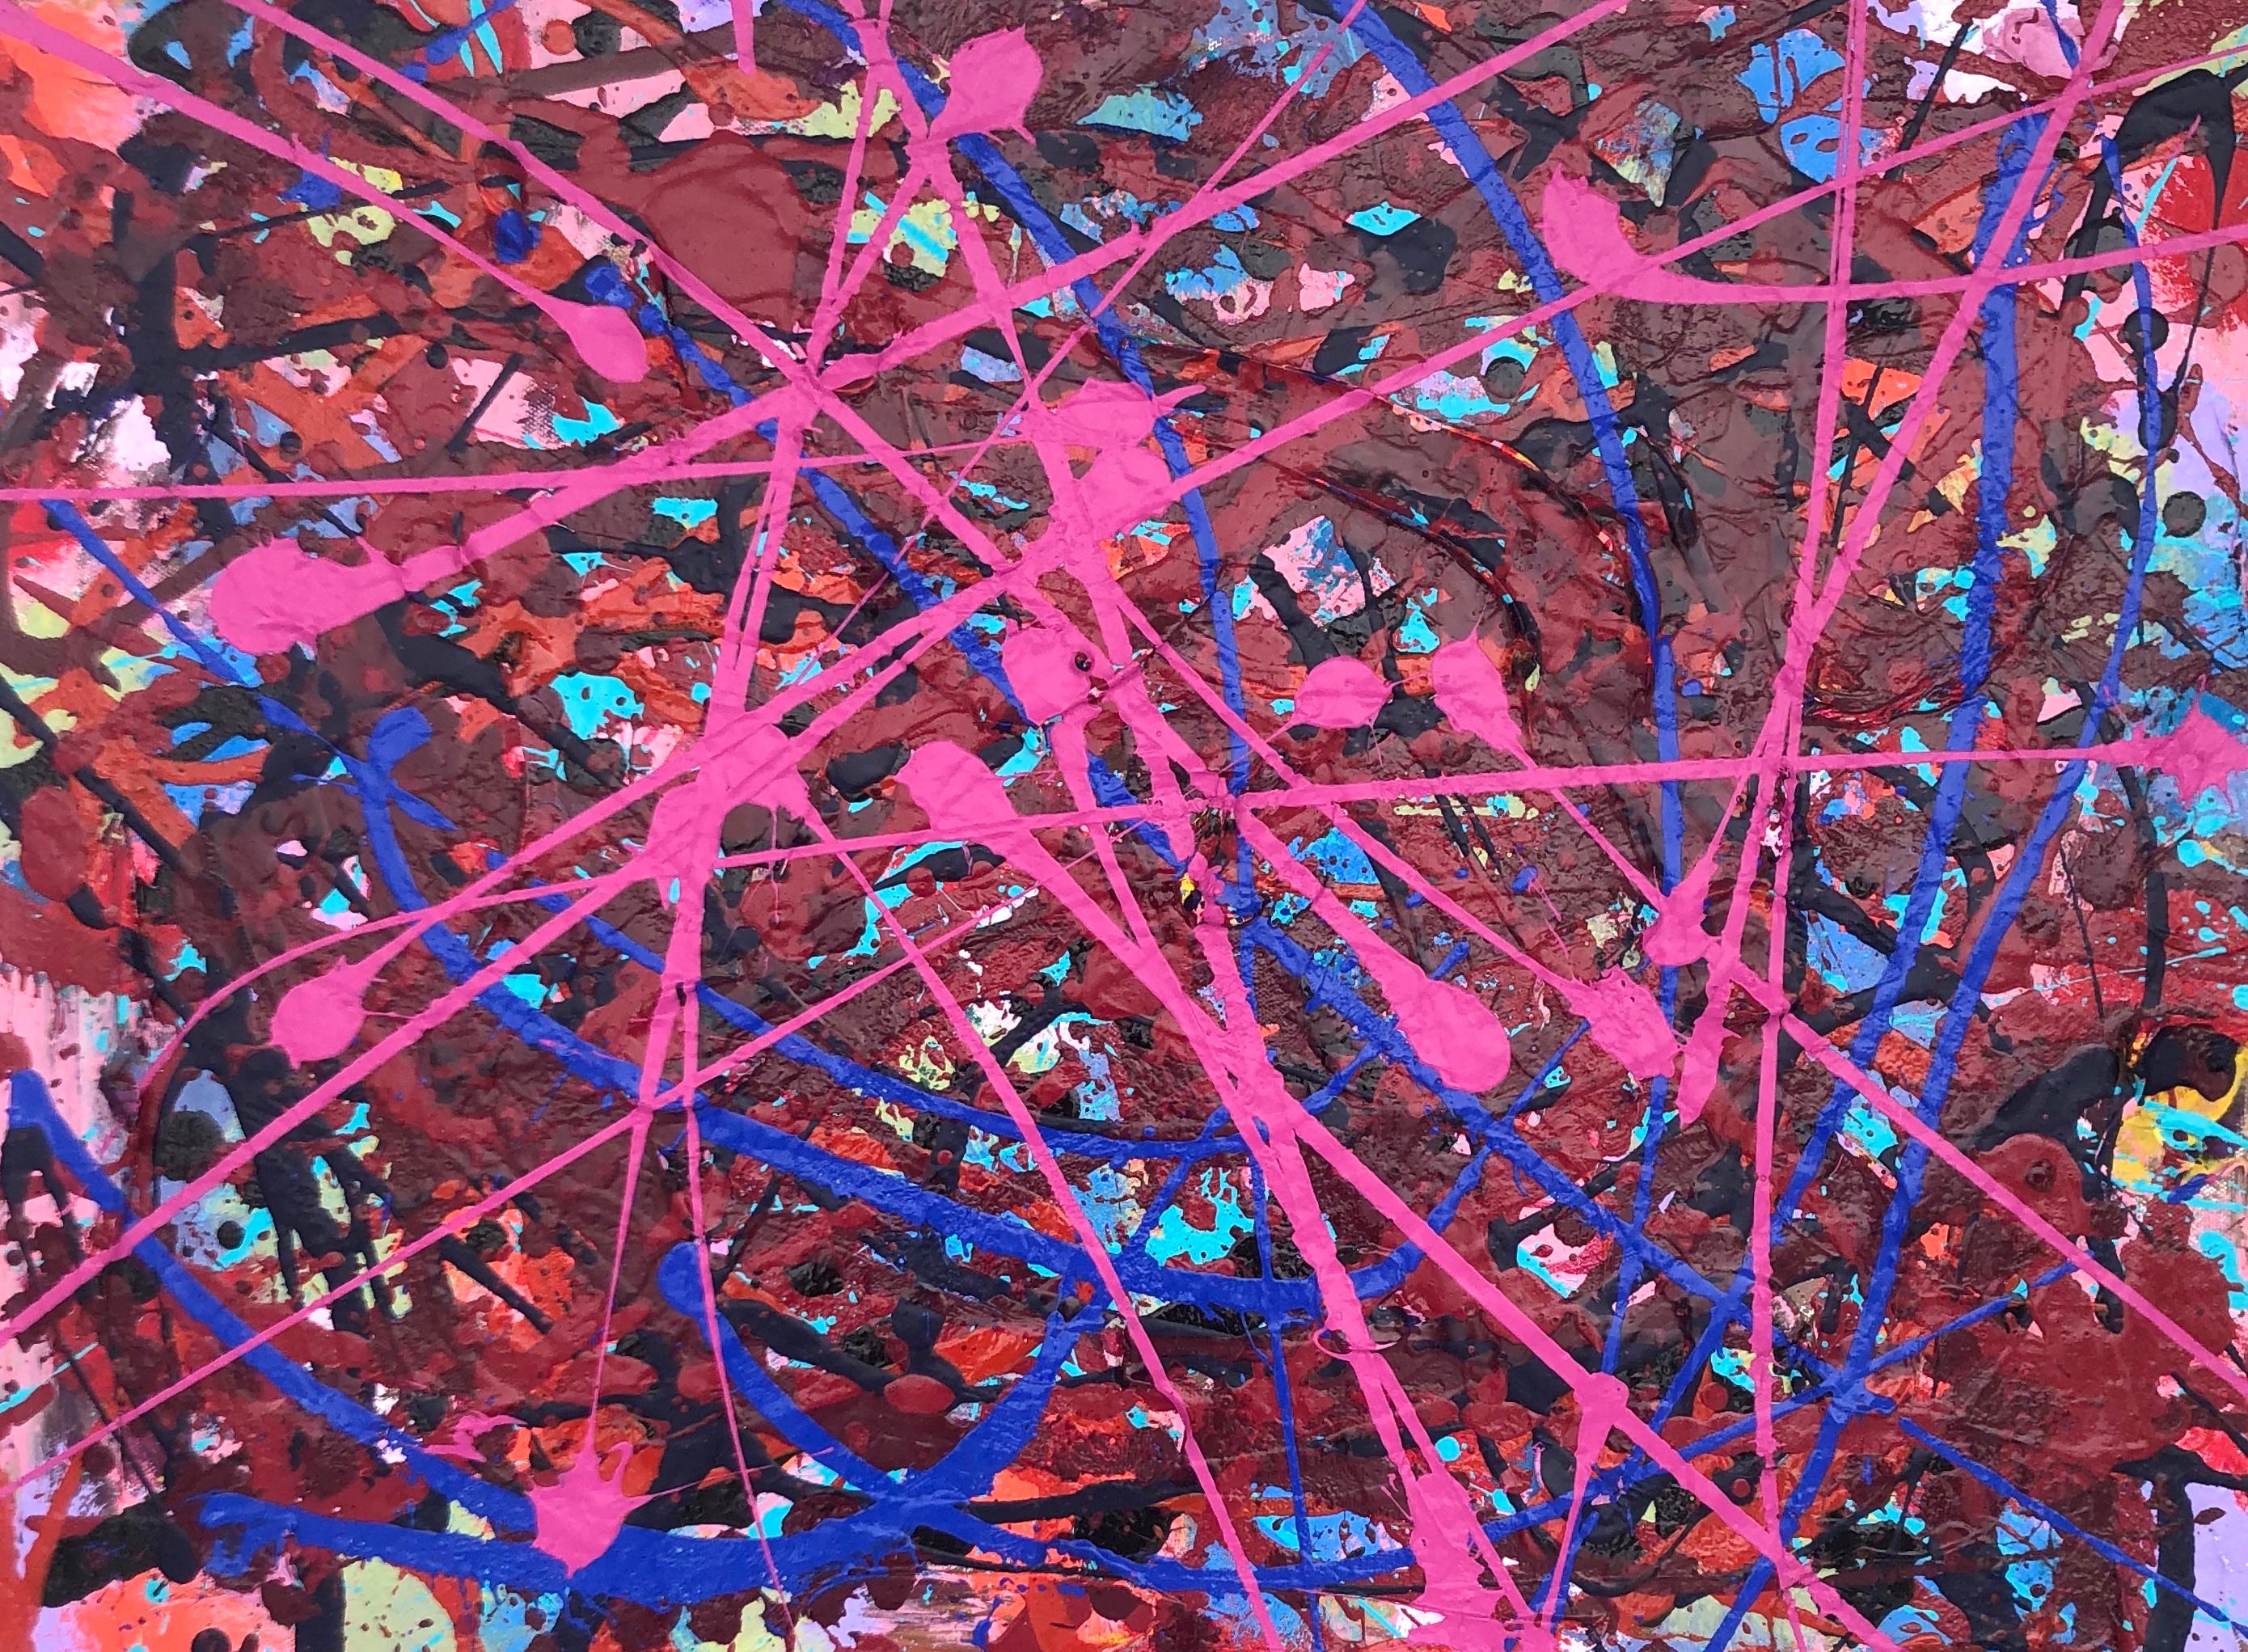 Abstract Painting Dennis Alter - Jazz : expressionnisme abstrait contemporain, peinture à gouttes gestuelle en rose et bleu